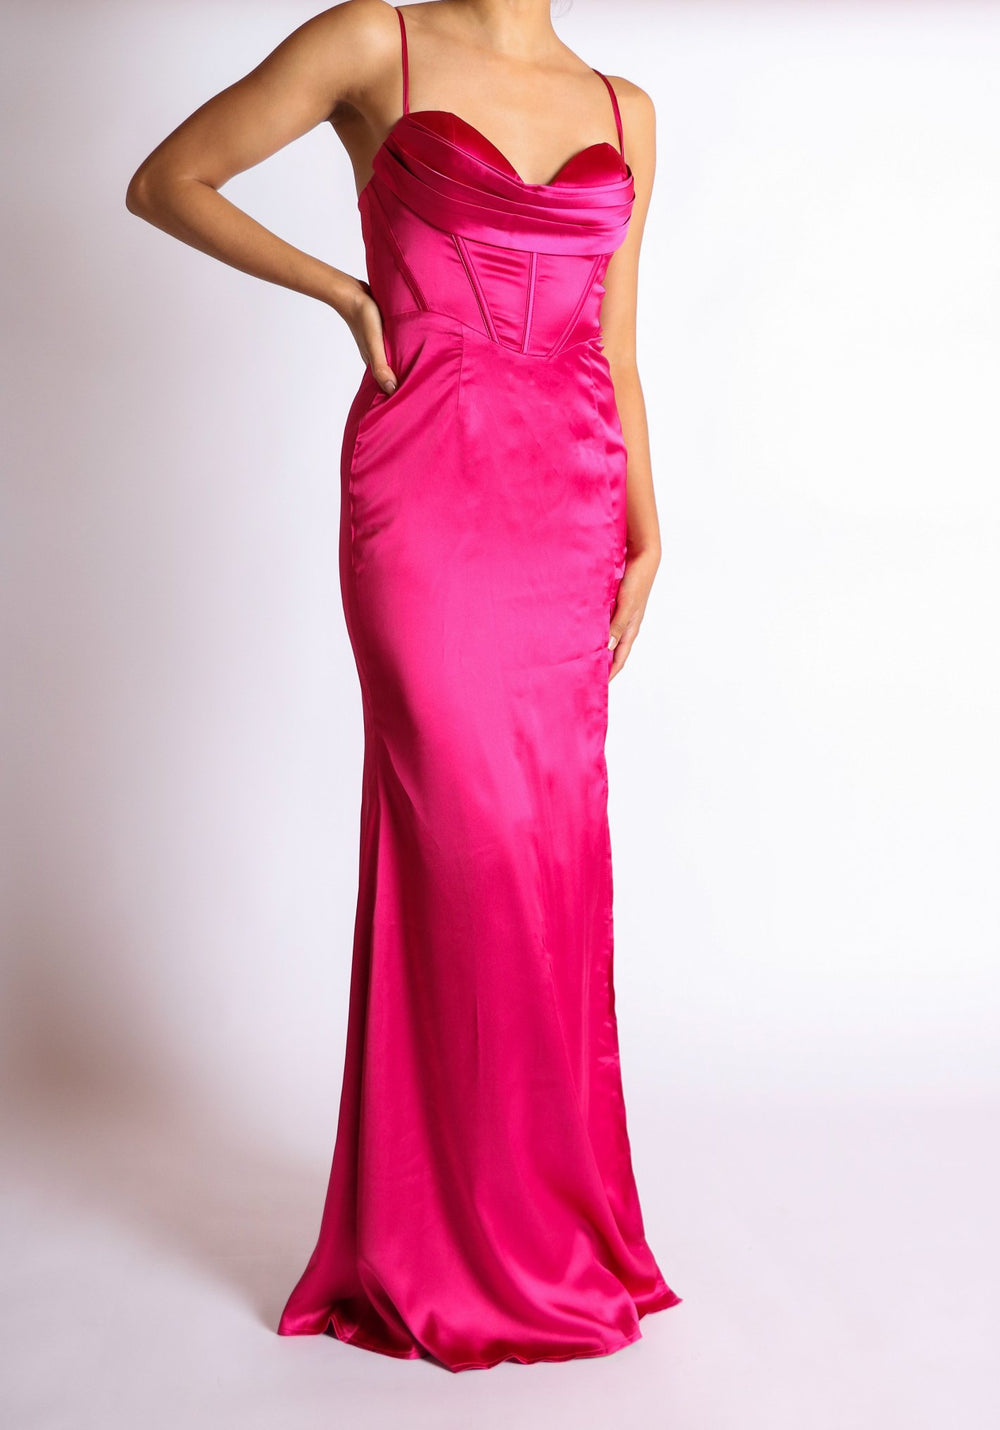 Evelyn - rosa fuchsia - Lend the Trend renta de vestidos mexico